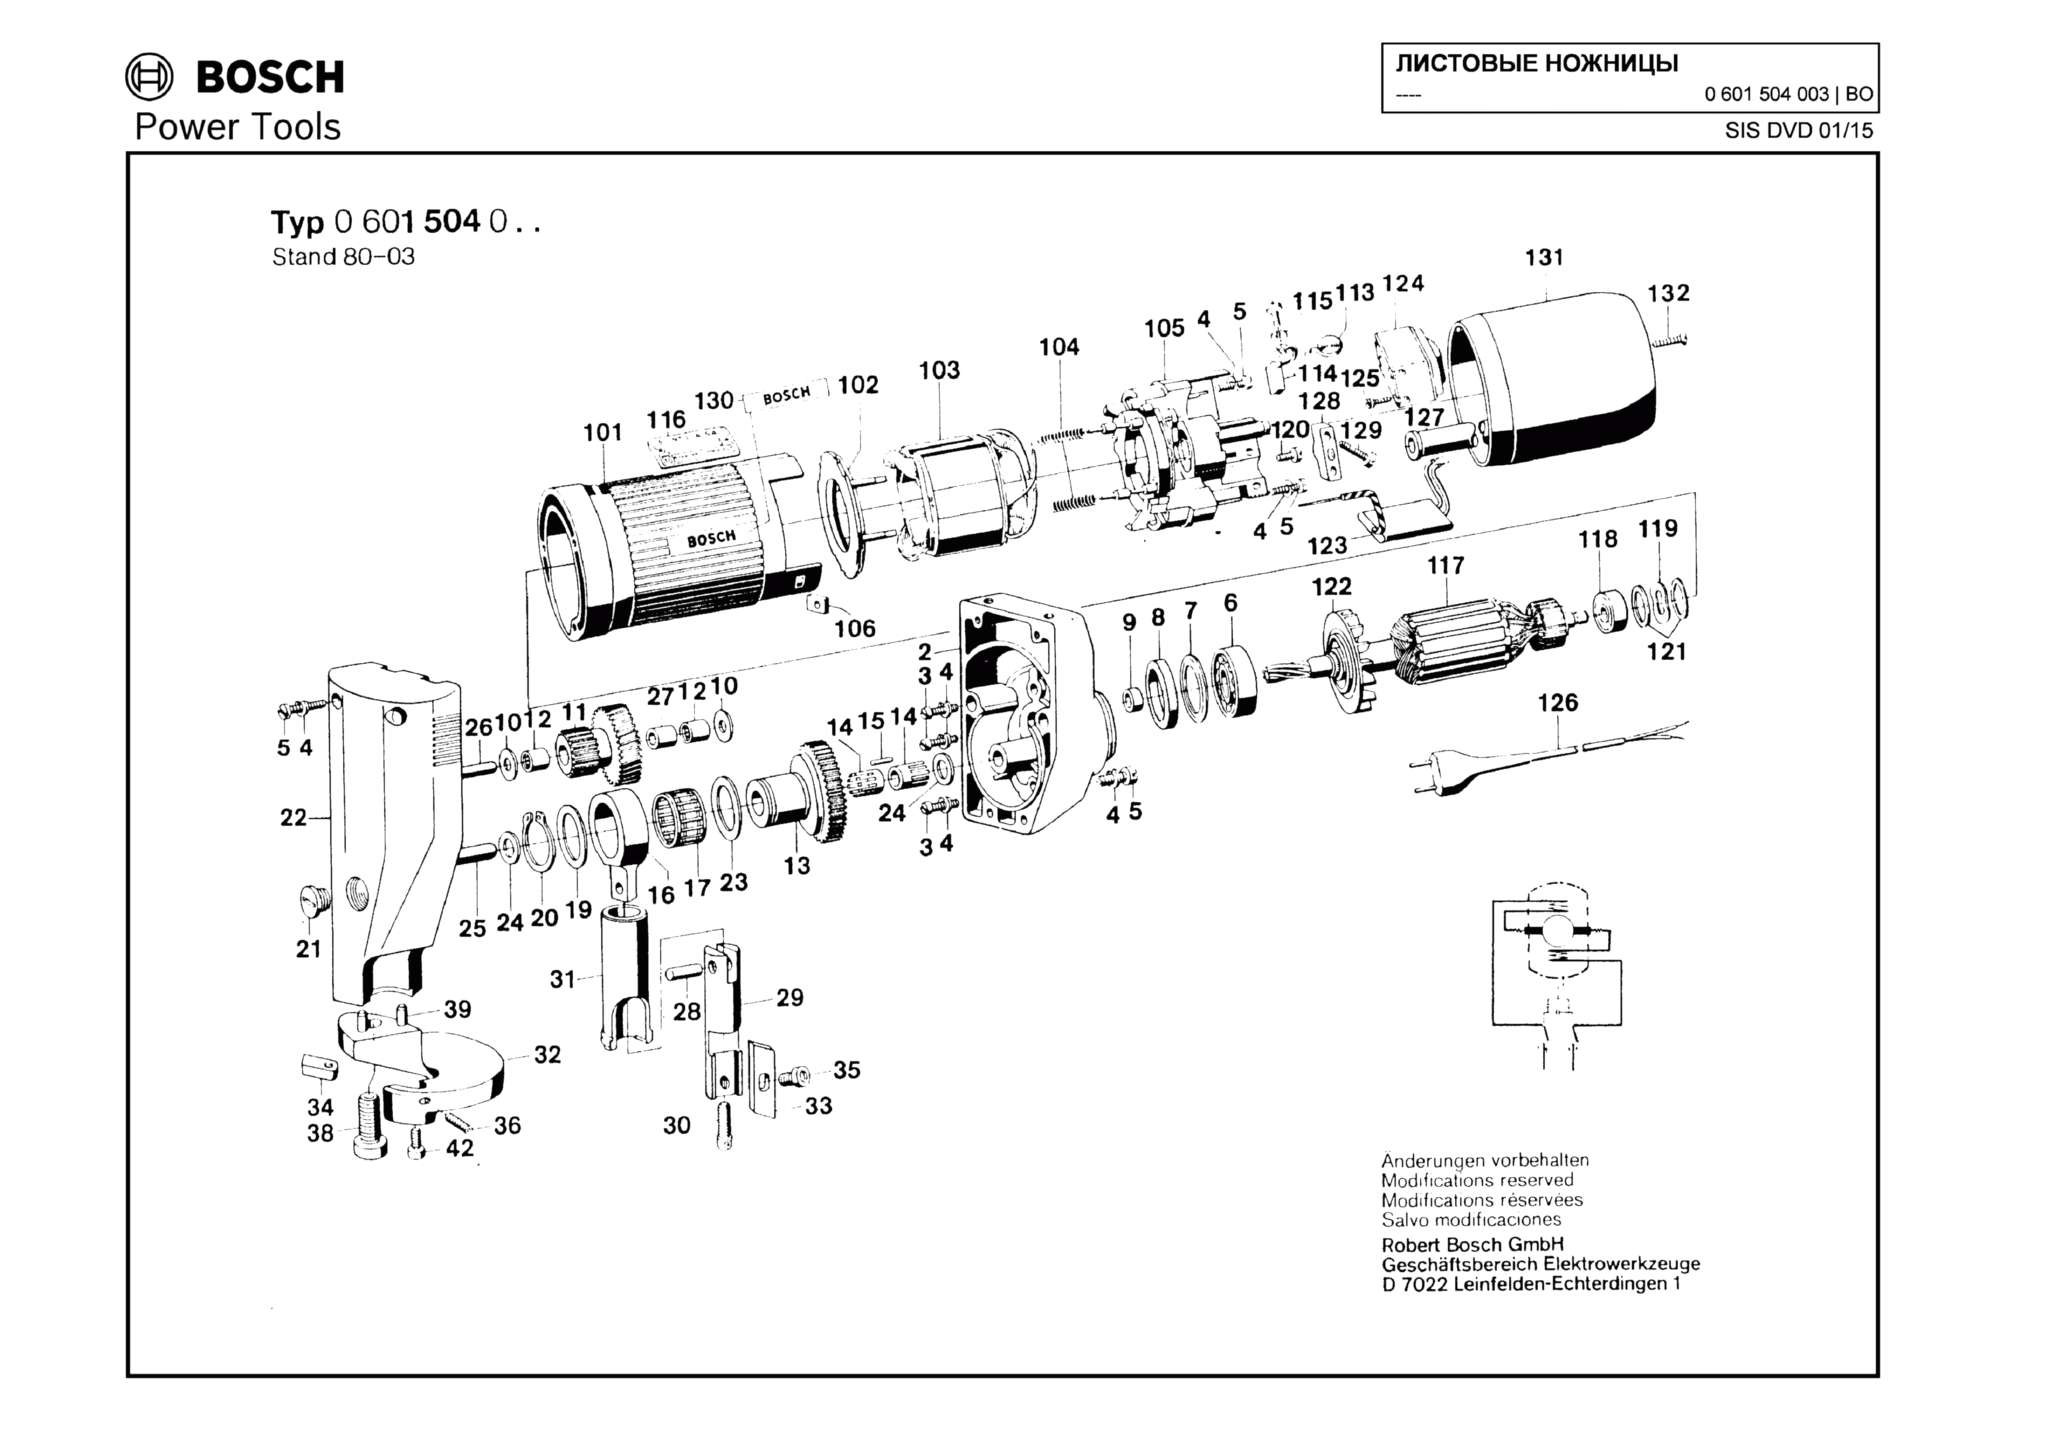 Запчасти, схема и деталировка Bosch (ТИП 0601504003)